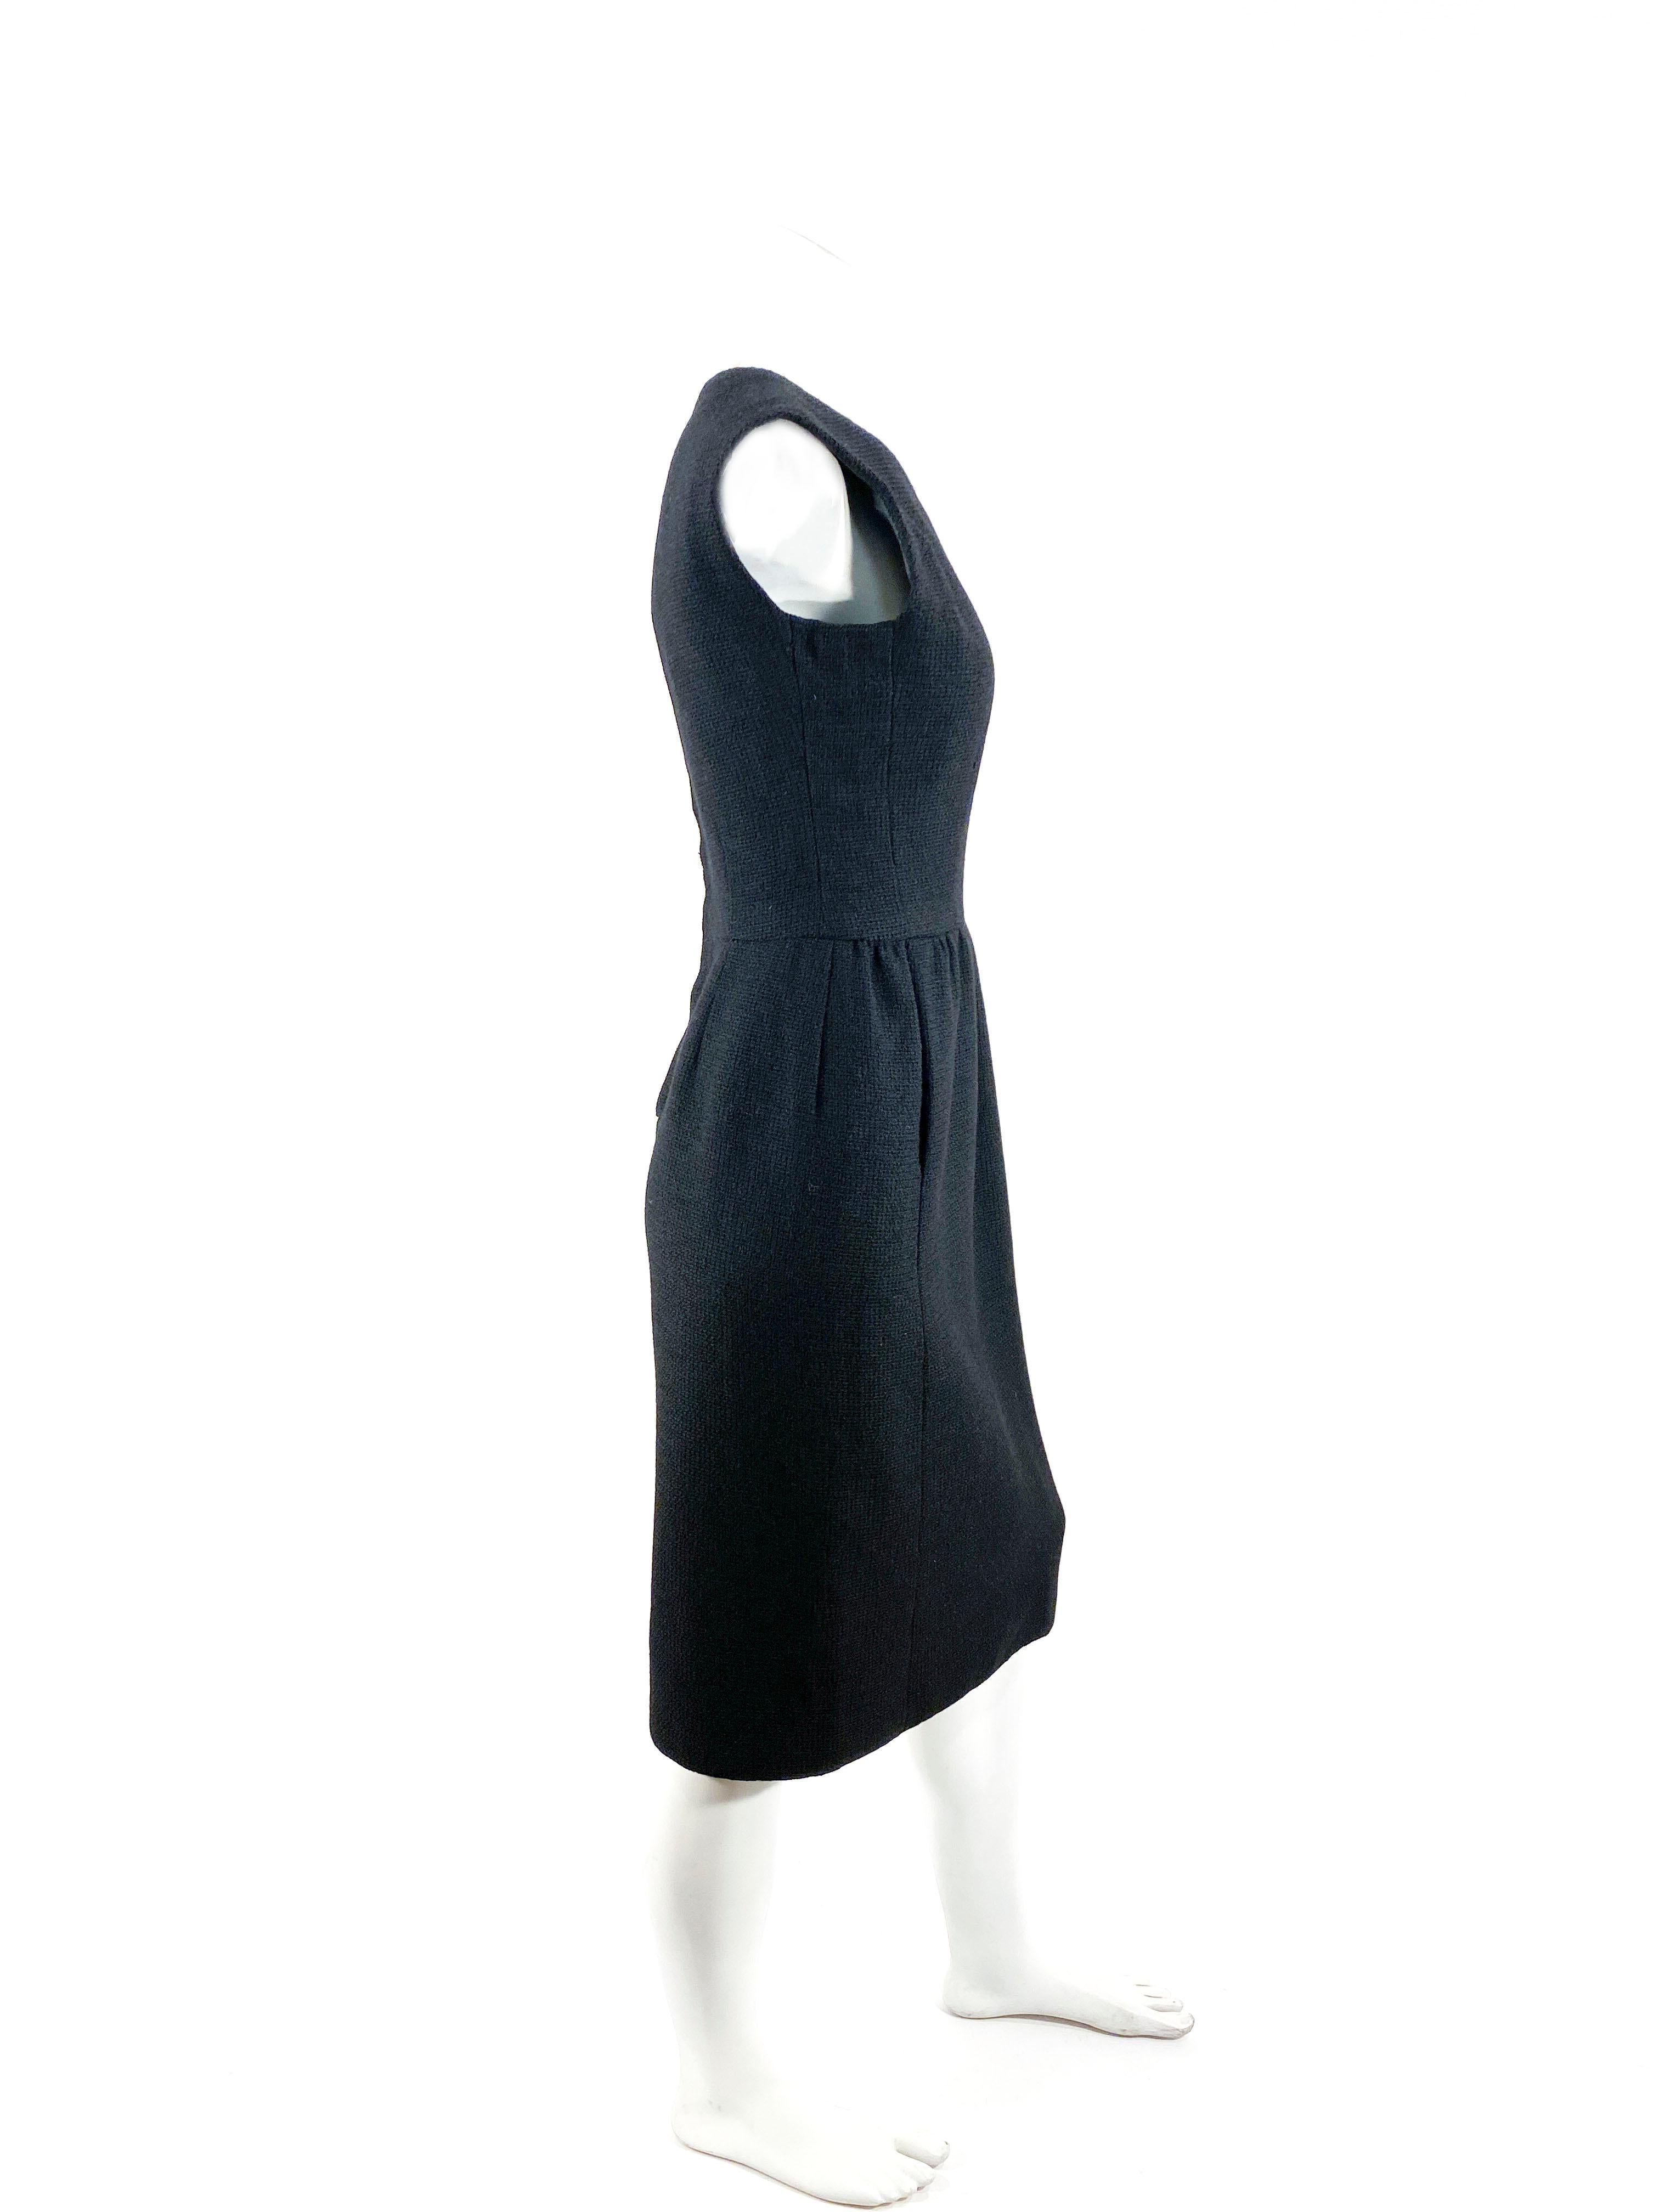 Women's 1950s/1960s Black Wool Dress For Sale